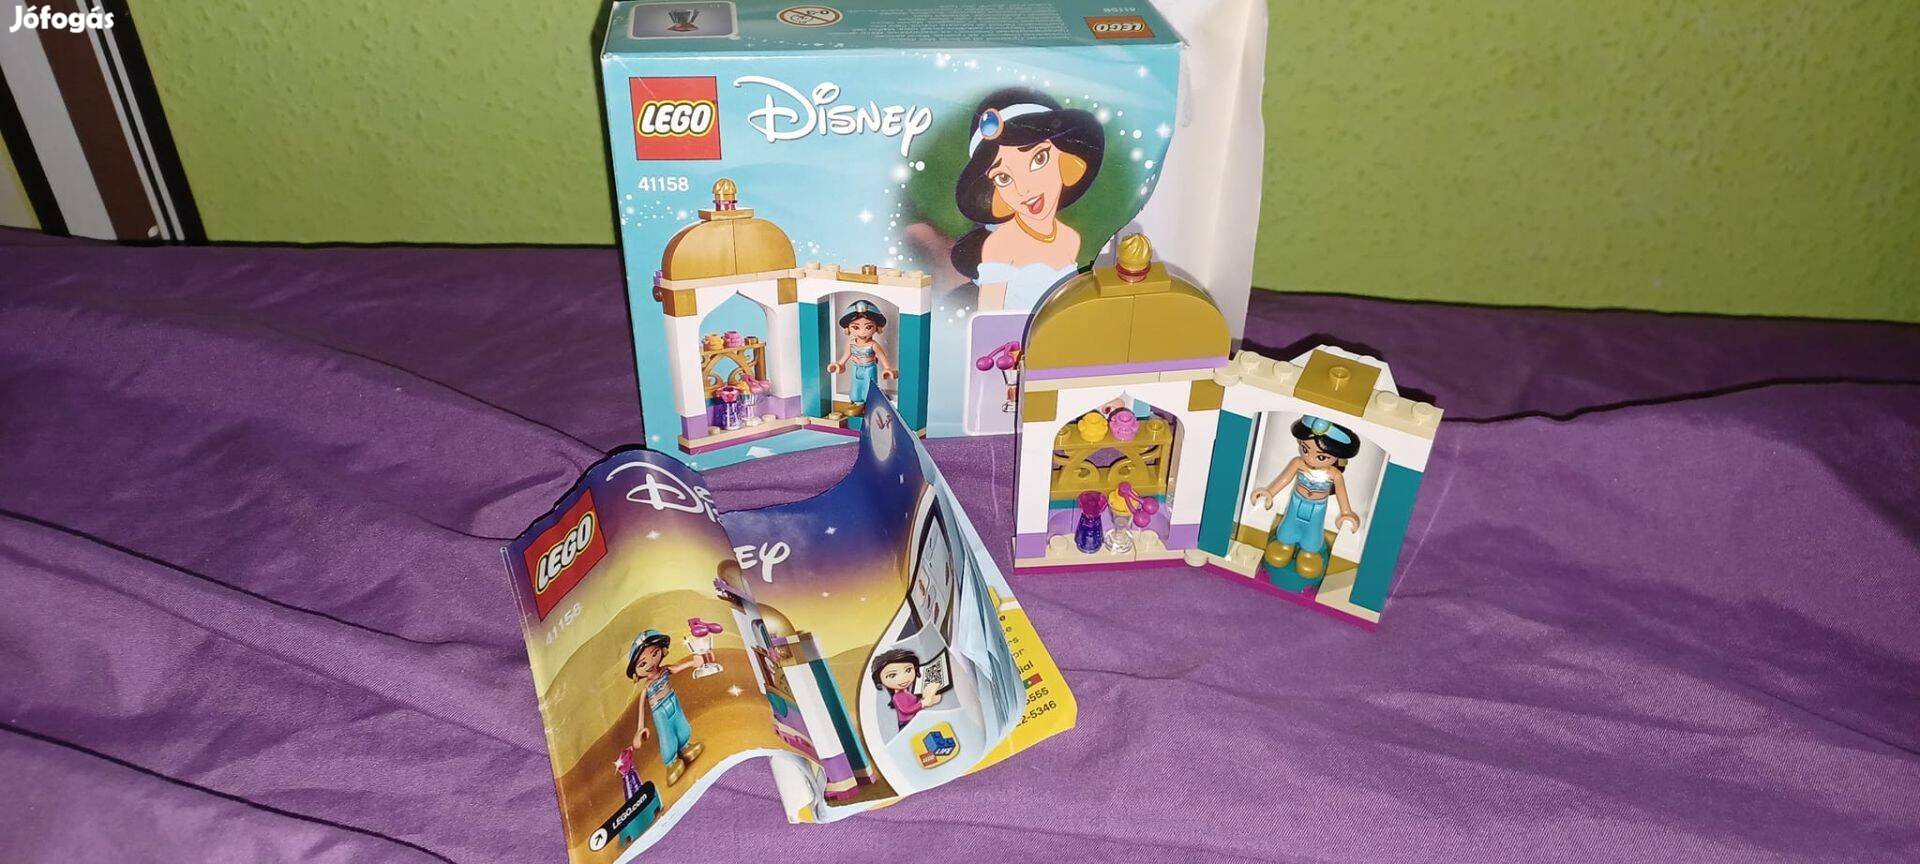 LEGO Disney Princess - Jázmin kicsi tornya (41158)